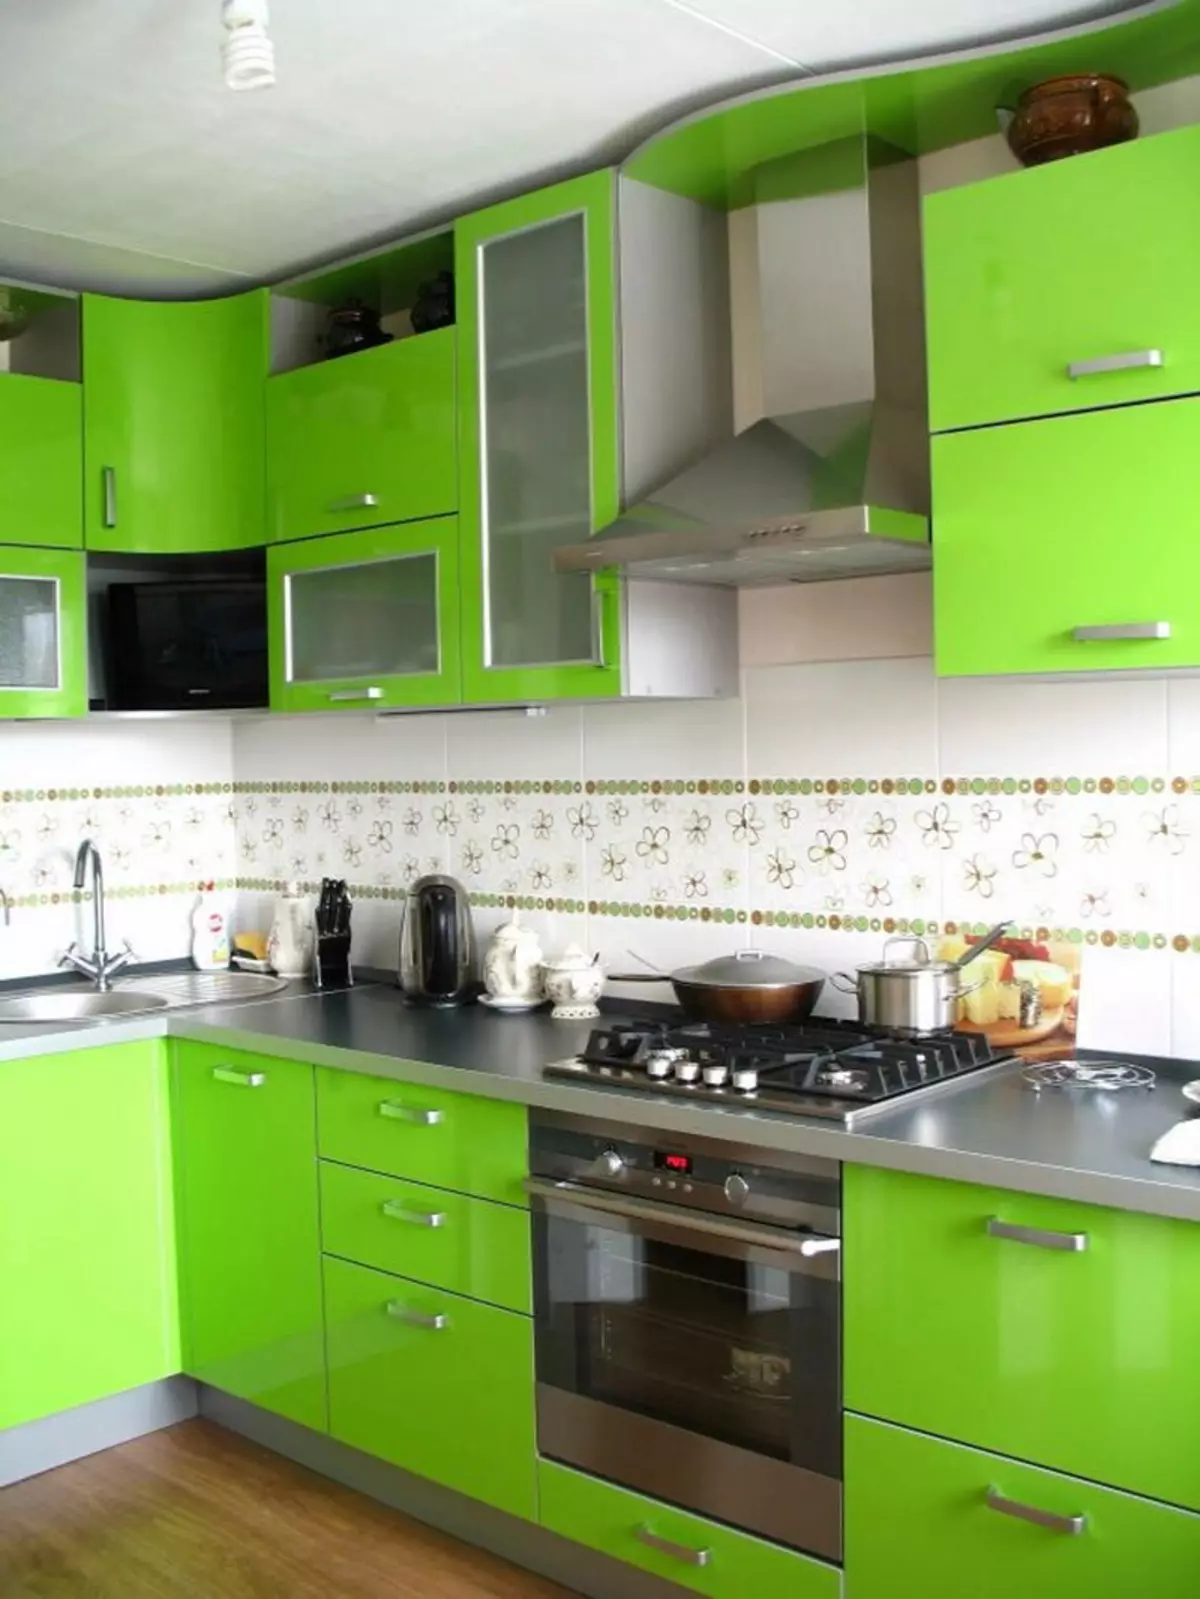 מטבח ירוק (111 תמונות): אוזניות מטבח ירוק בעיצוב פנים, בחירת טפטים ירוקים, ירוק אפור וירוק כהה, שחור וירוק ומטבח ירוק 9554_36